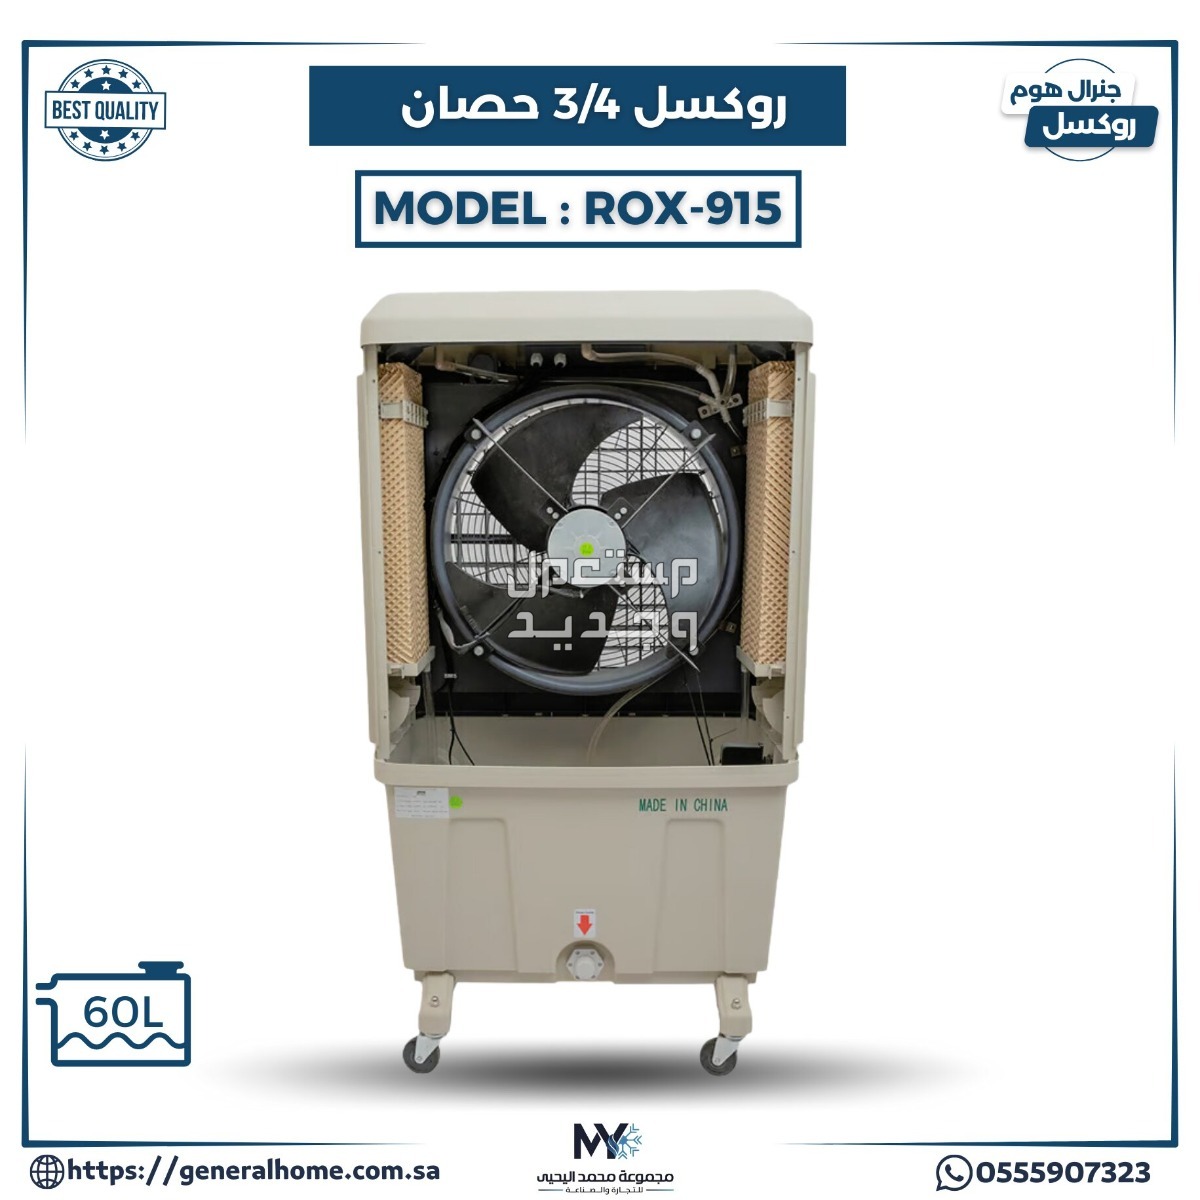 عروض اليحيى للمكيفات بالأنواع والمواصفات والصور والأسعار في العراق مكيف روكسل 3/4 حصان موديل ROX-915